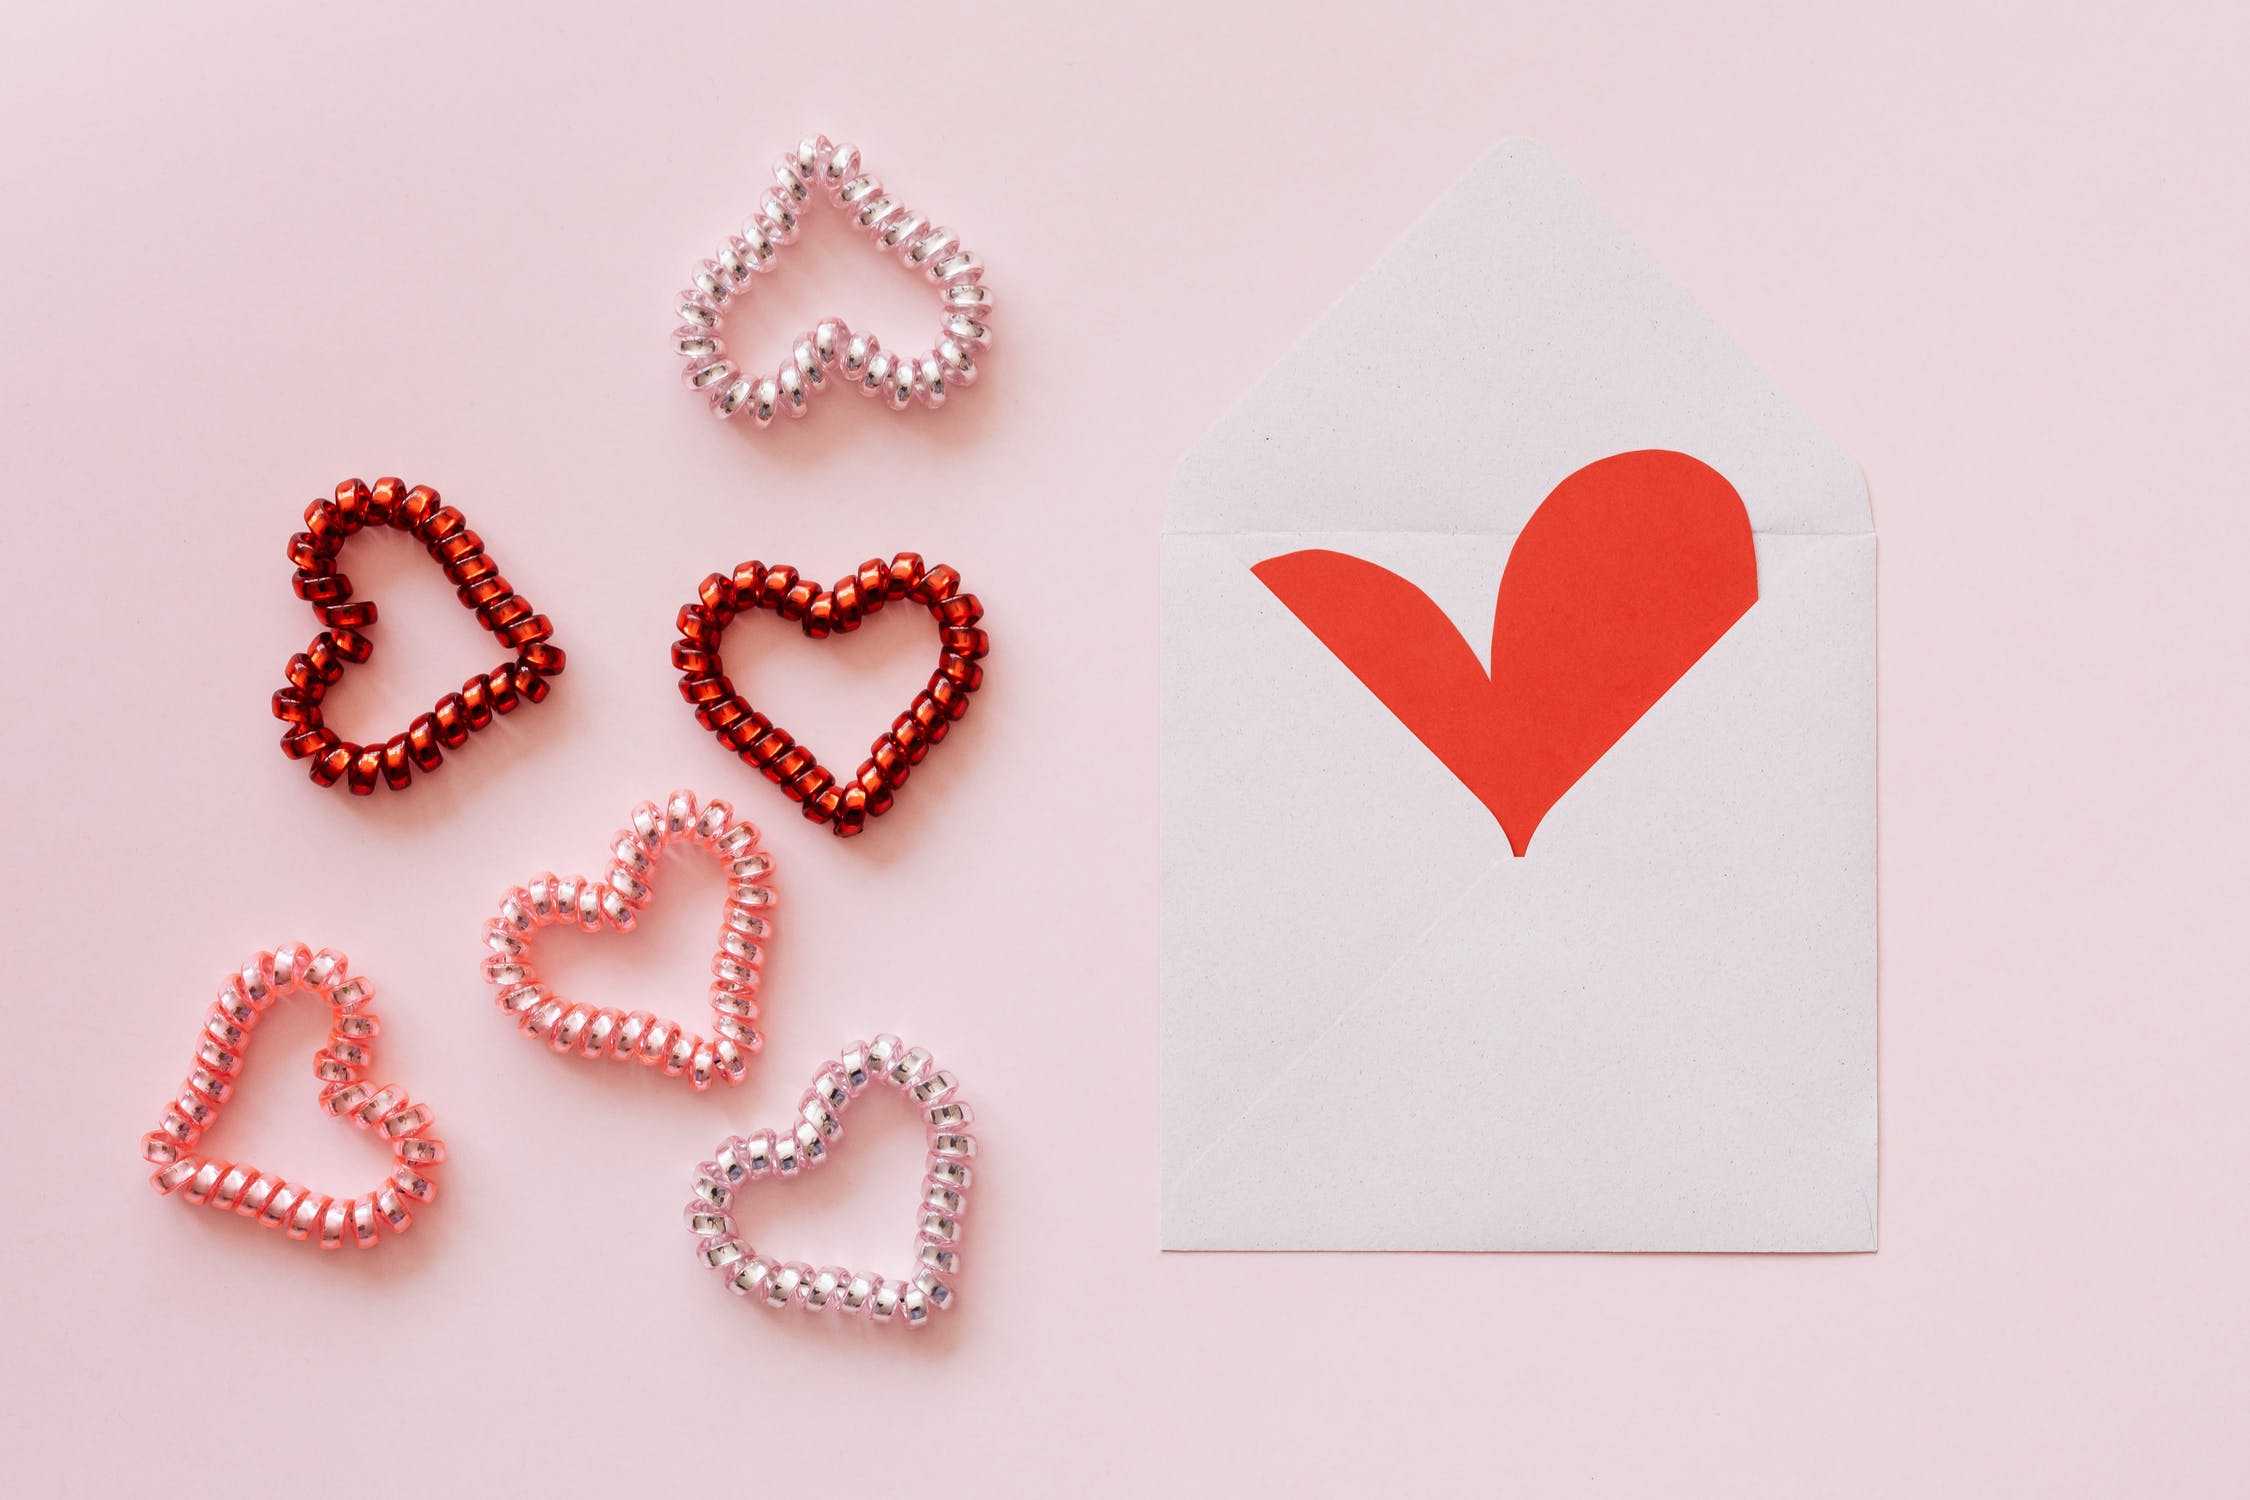 9 интересных и легких открыток валентинок из бумаги делаем своими руками